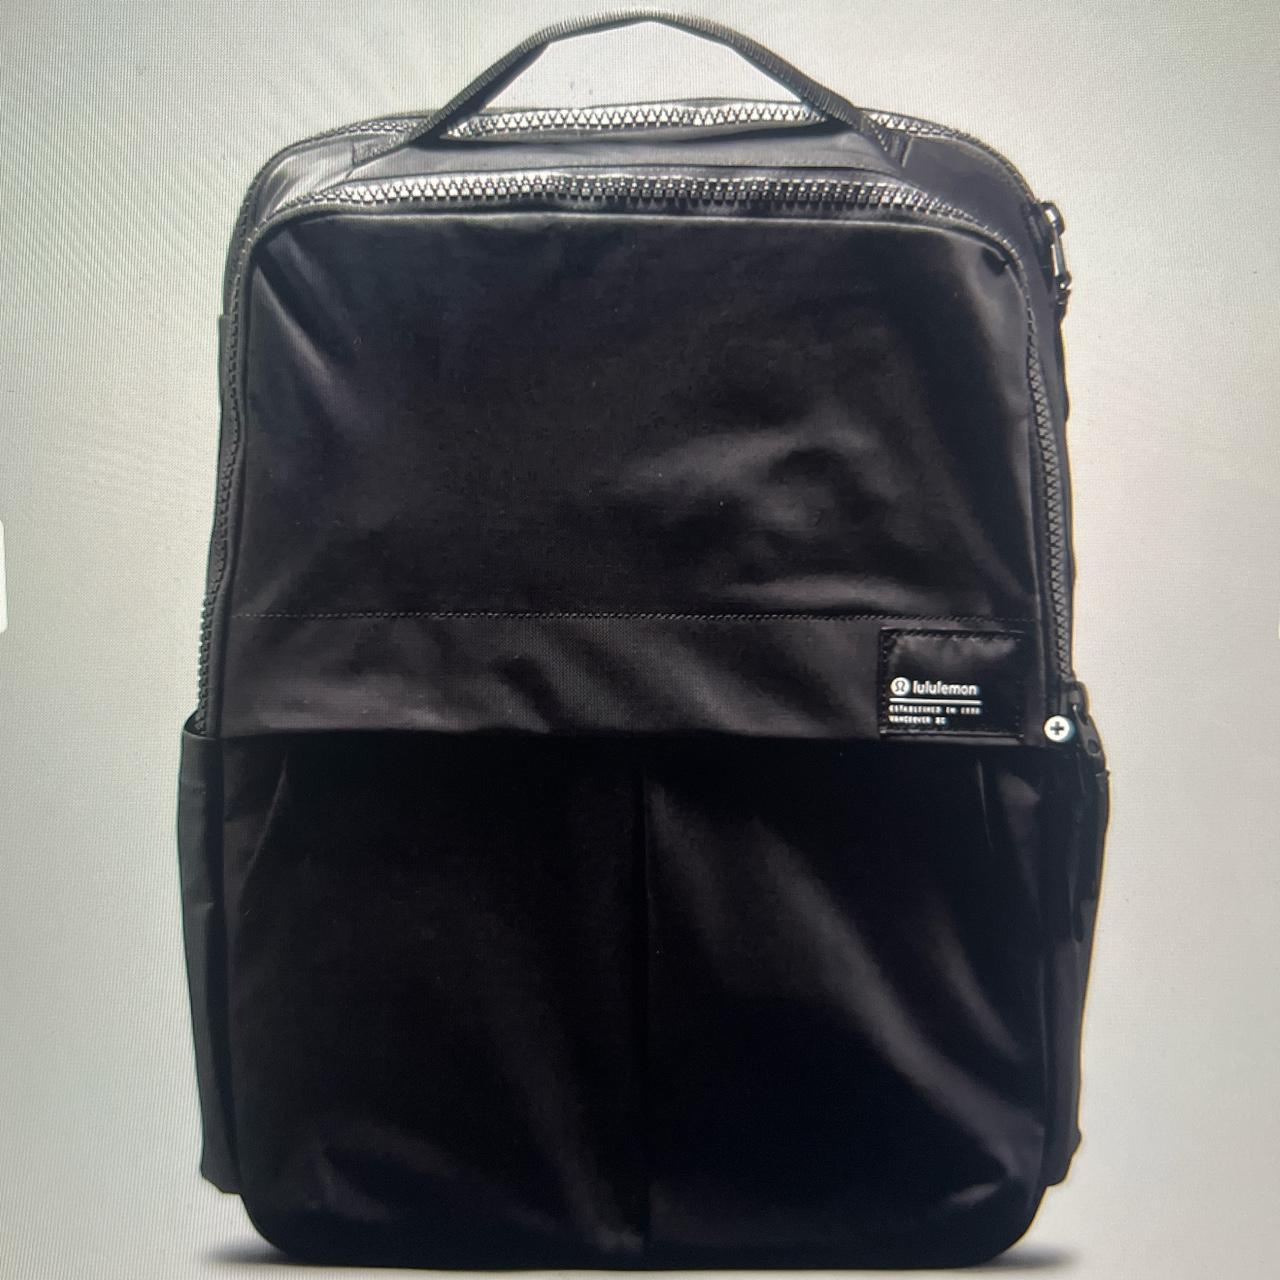 lululemon backpack-everyday backpack 2.0 23L - Depop